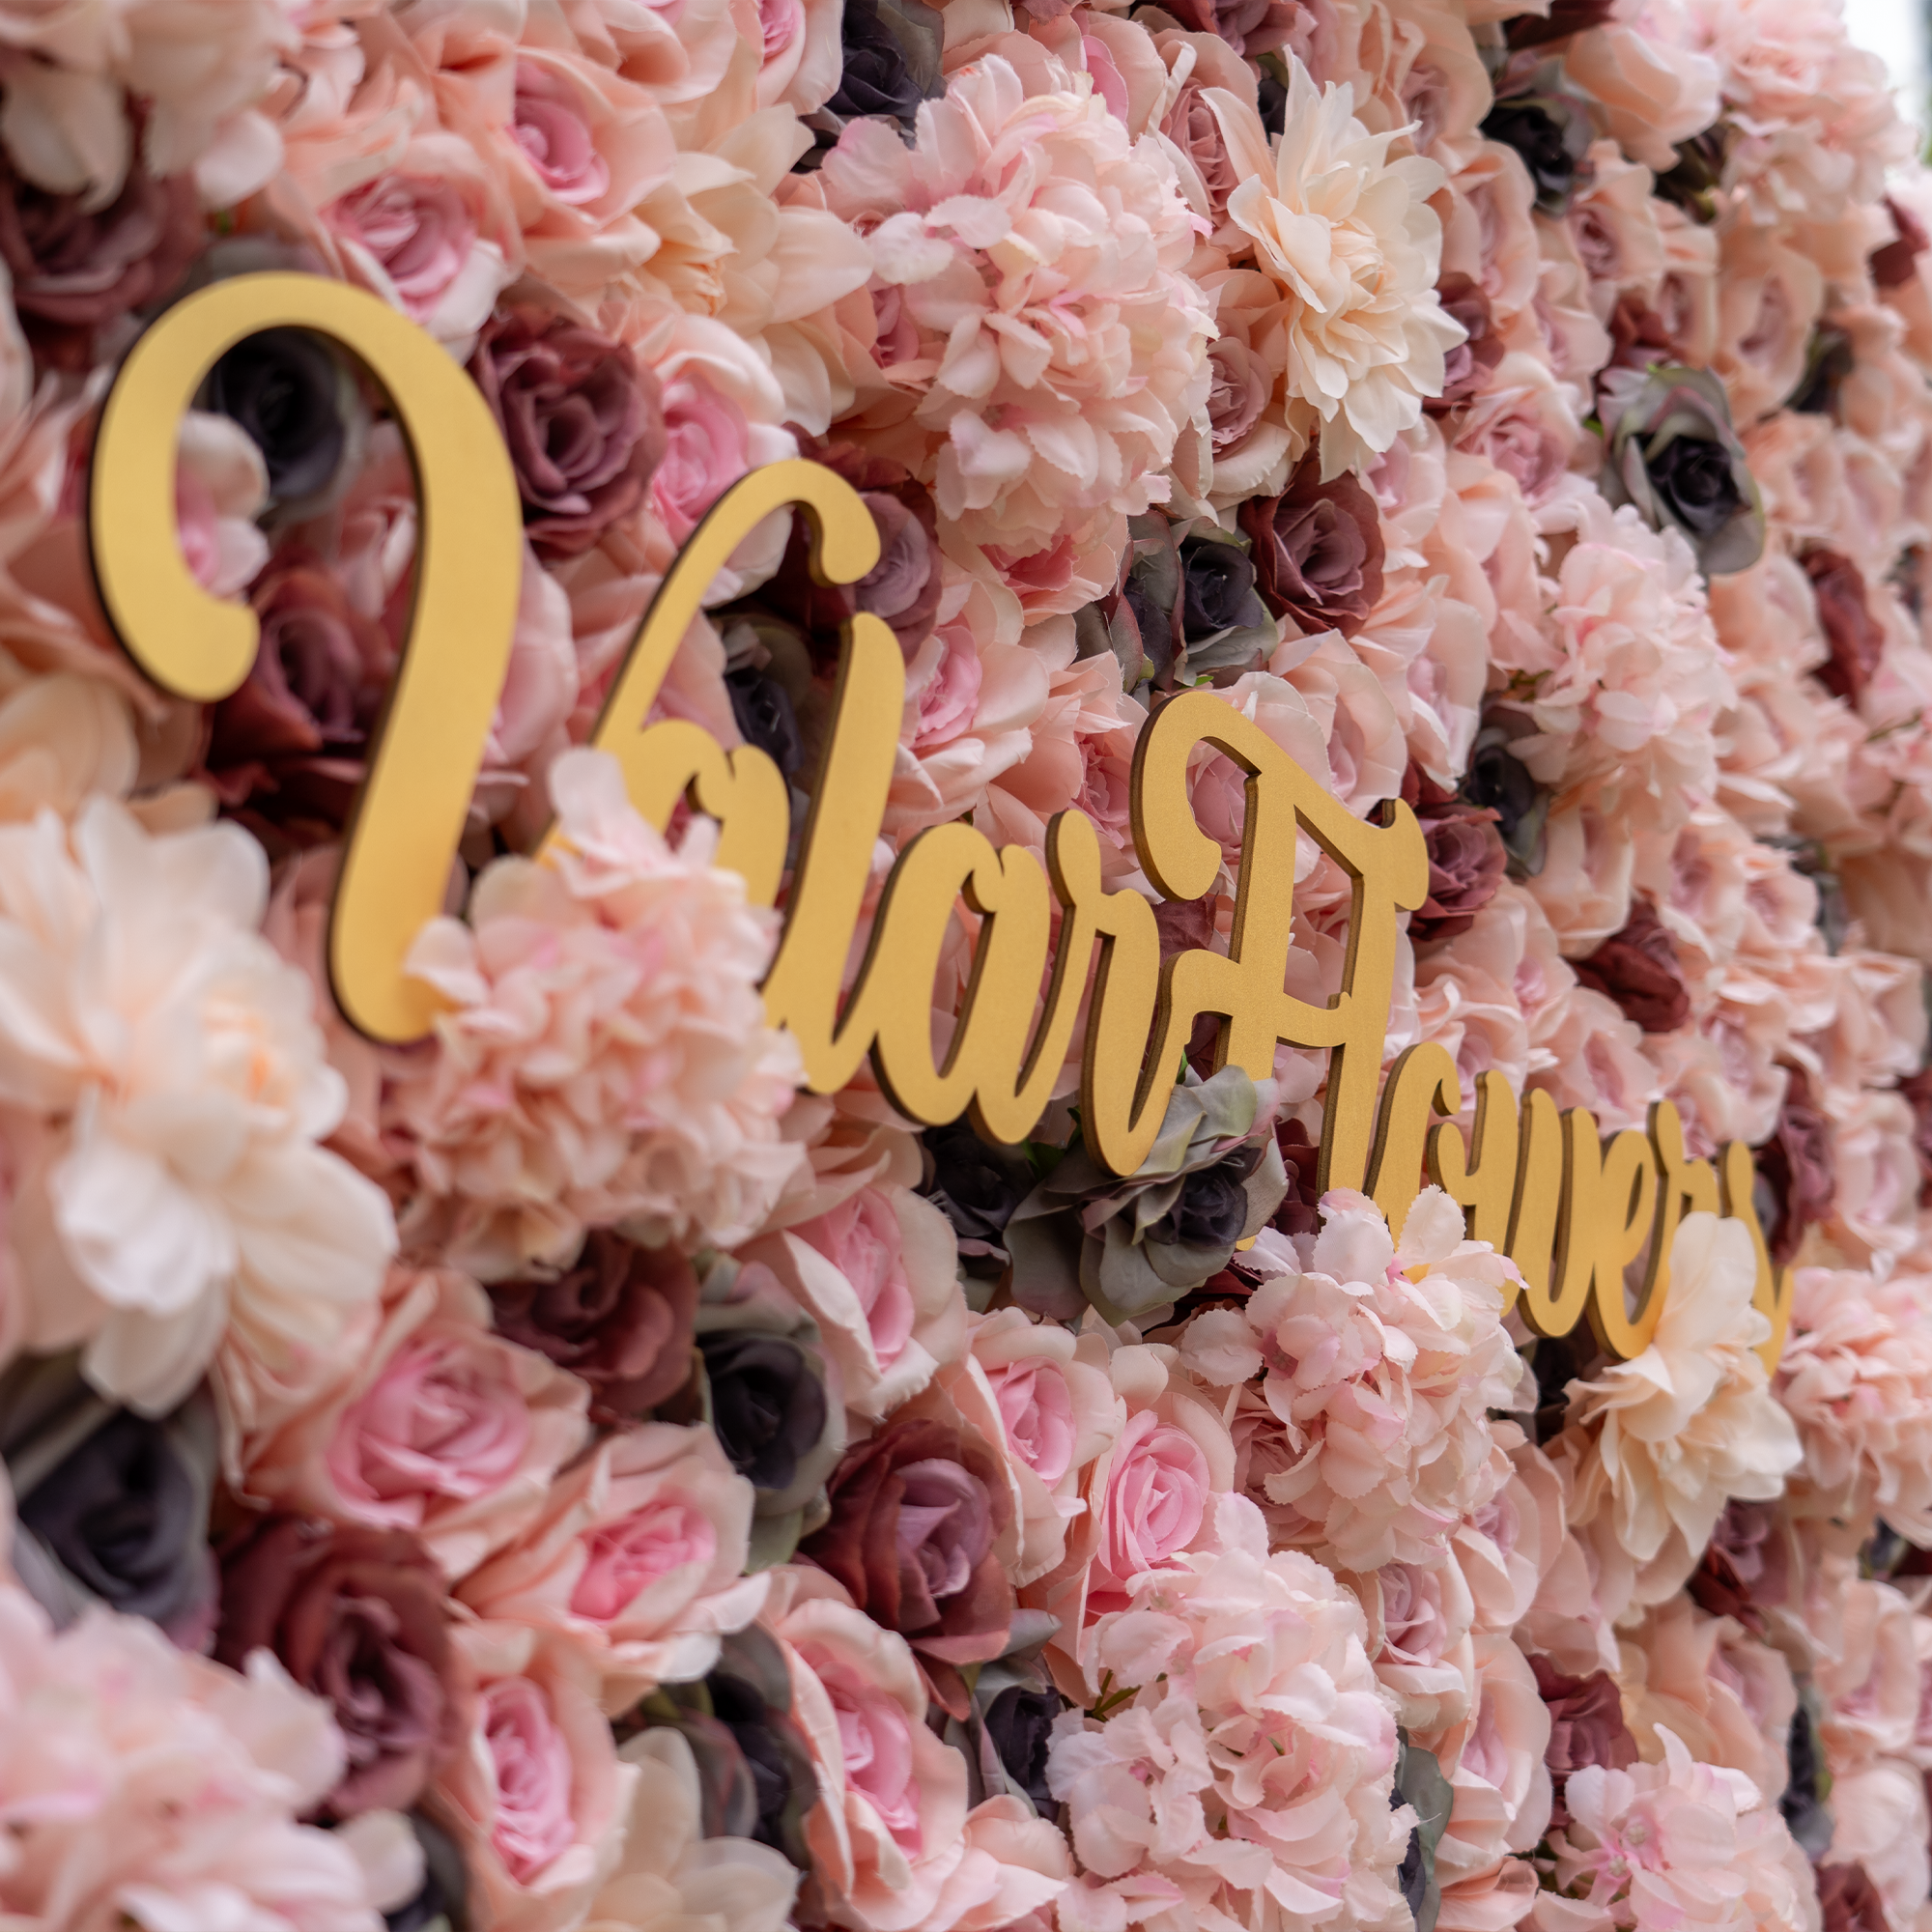 زهور الفالار لفة النسيج الاصطناعي المختلط البني والوردي زهرة رمادي خلفية جدار الزفاف ، ديكور حزب الأزهار ، الحدث